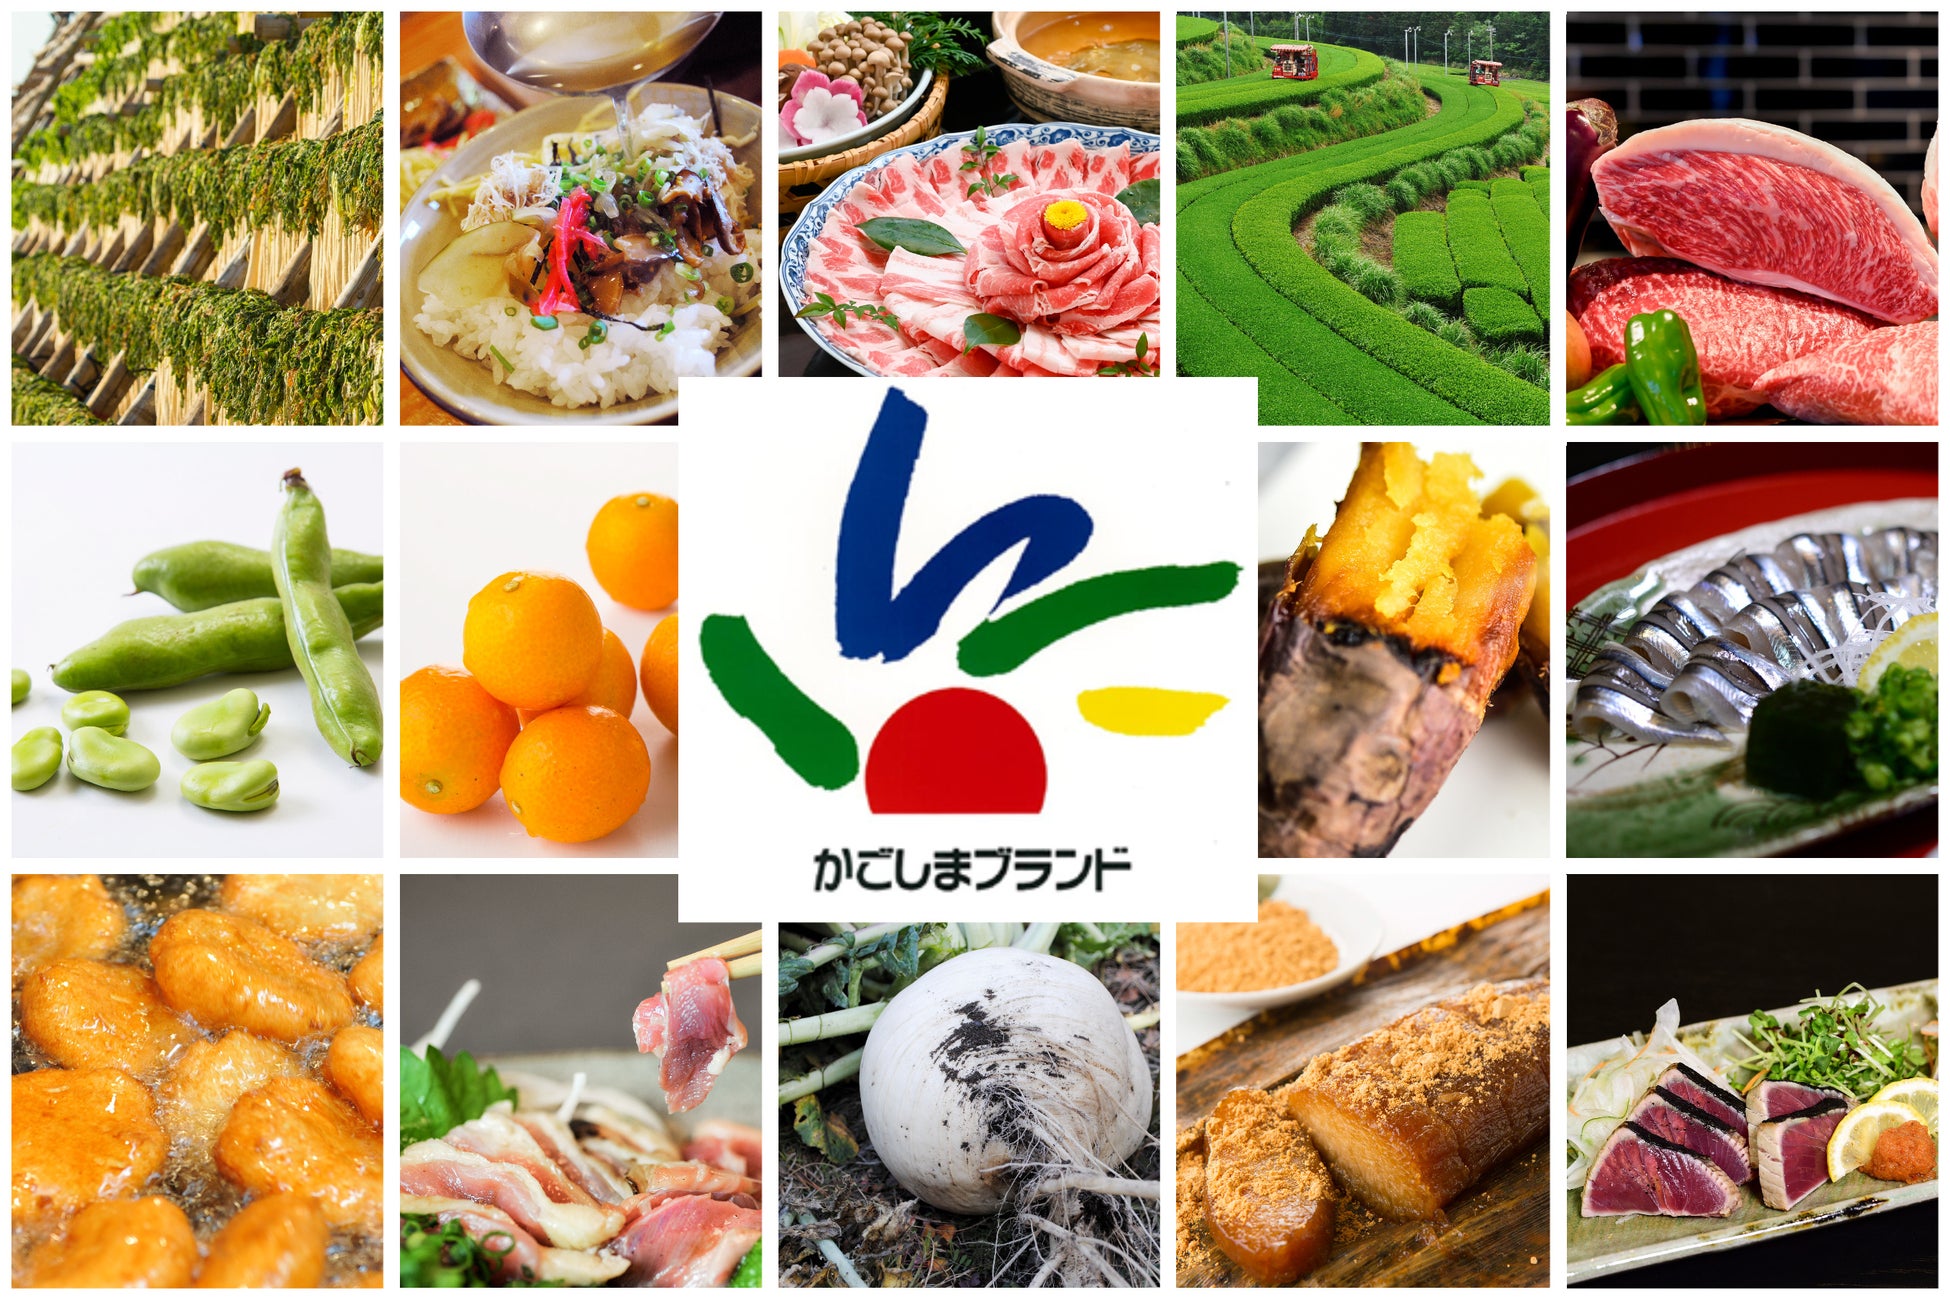 福岡の調理師専門学校生が九州の食に挑む。鹿児島食材を使った新メニュー開発を産学官連携で実践。